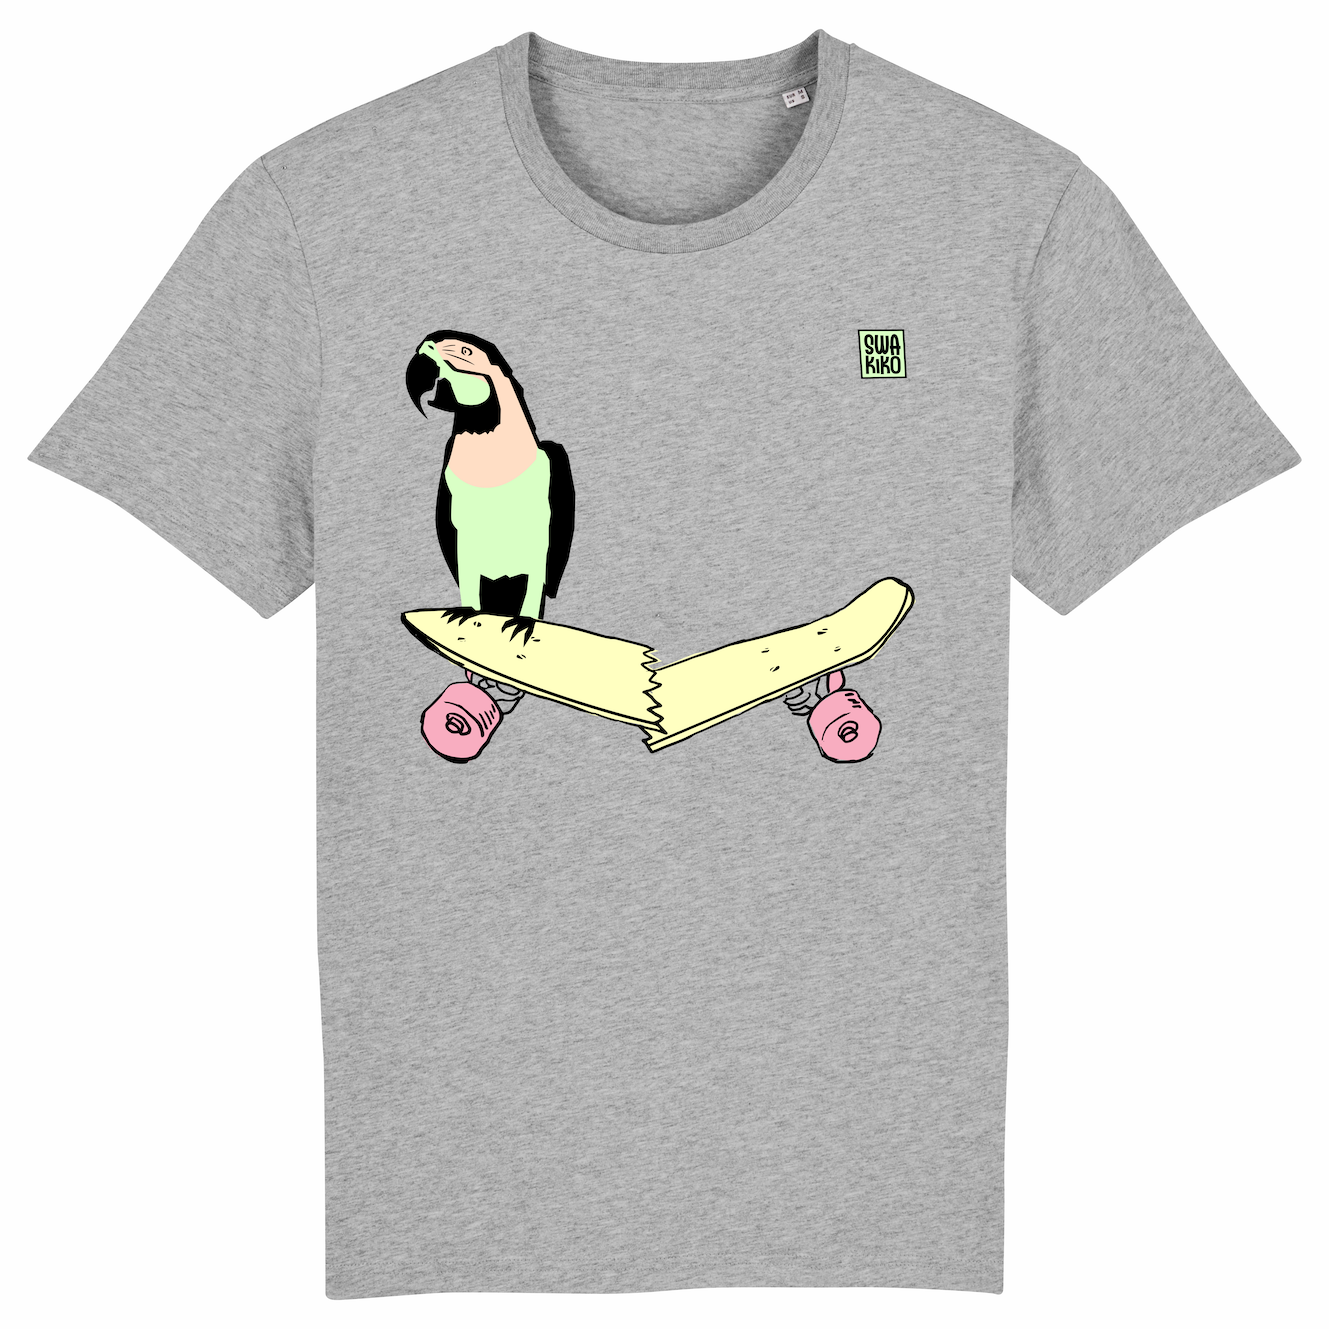 Skate T-shirt, parrot on skateboard, men, grey